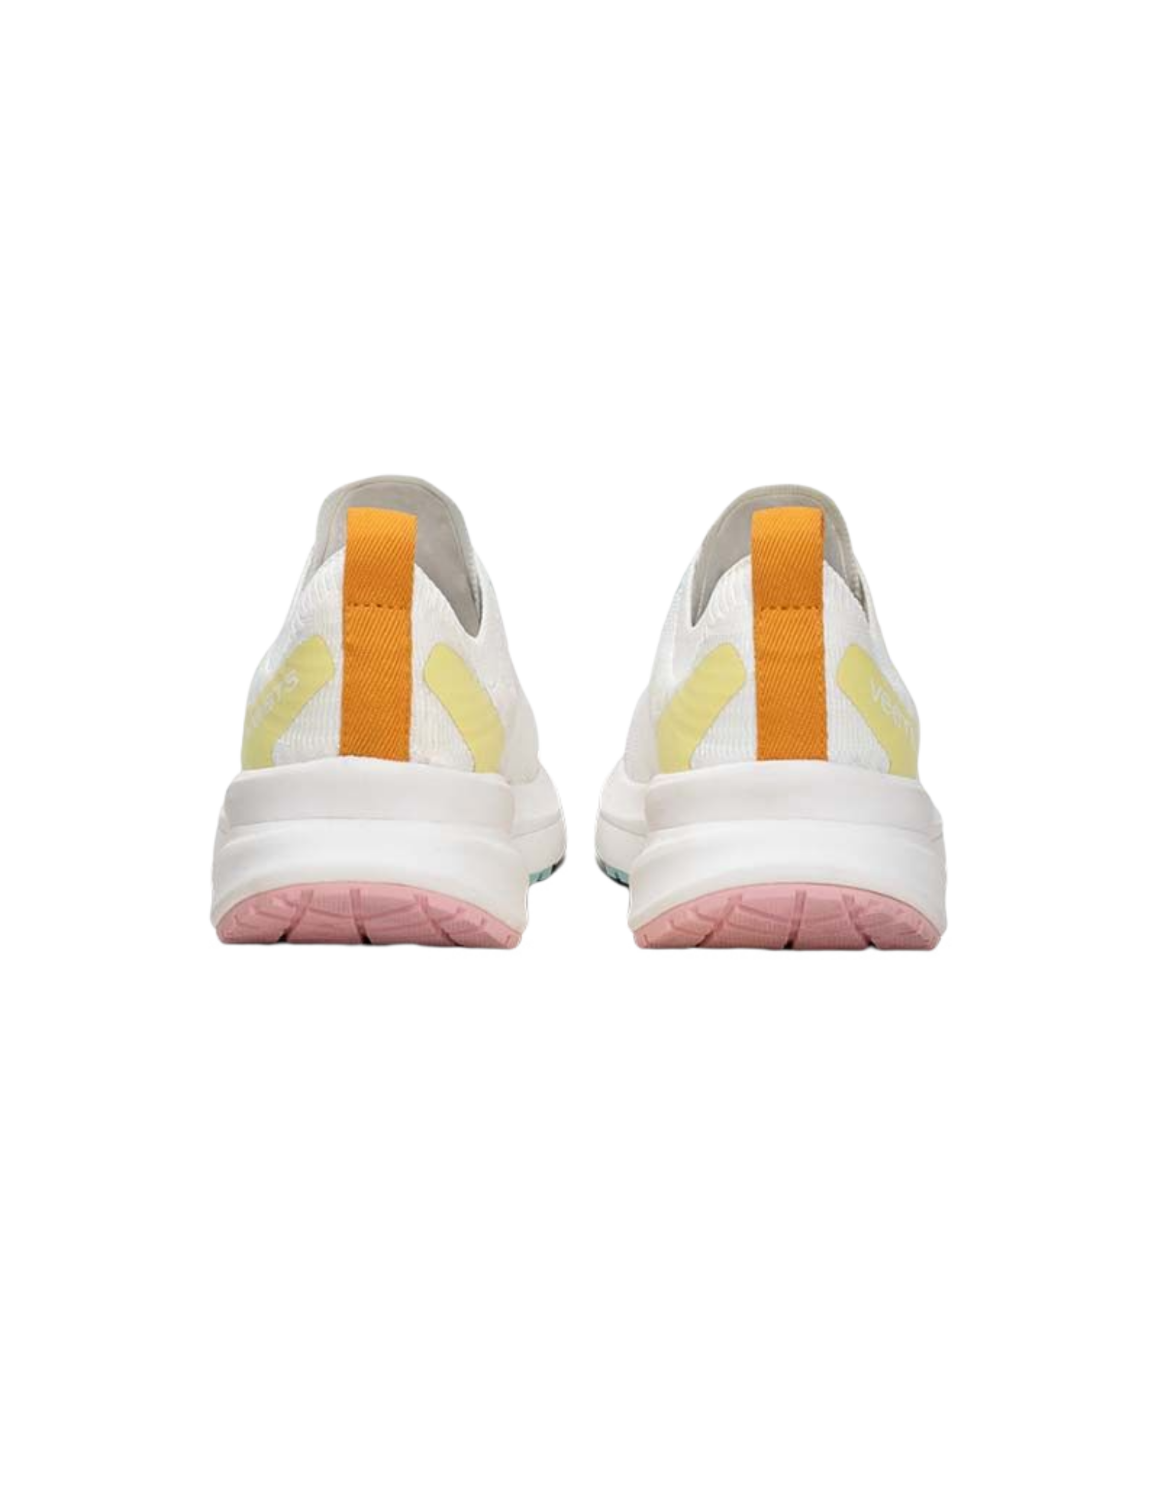 Chaussures de Running Veets Transition Knit Mif 1 Femme Blanc/Jaune, vue arrière